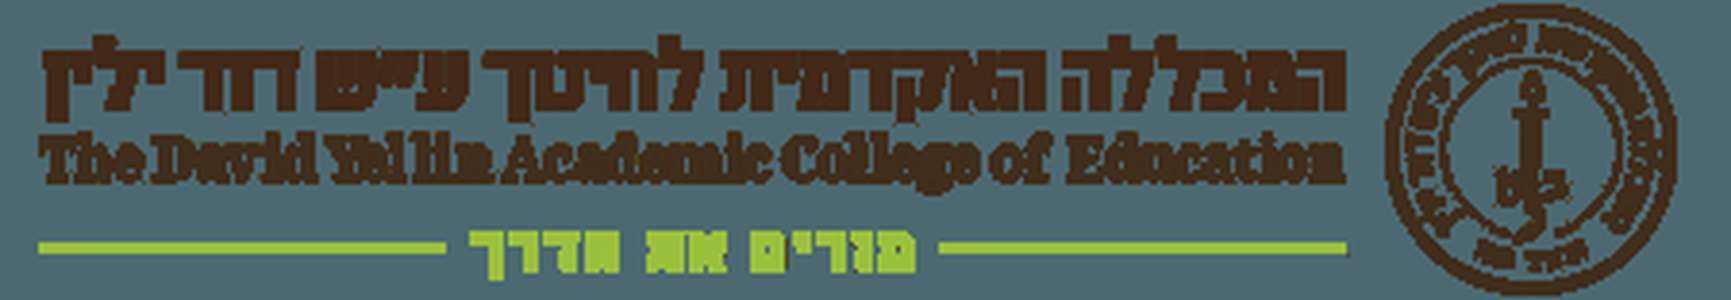 以色列-大卫耶林教育学院-logo